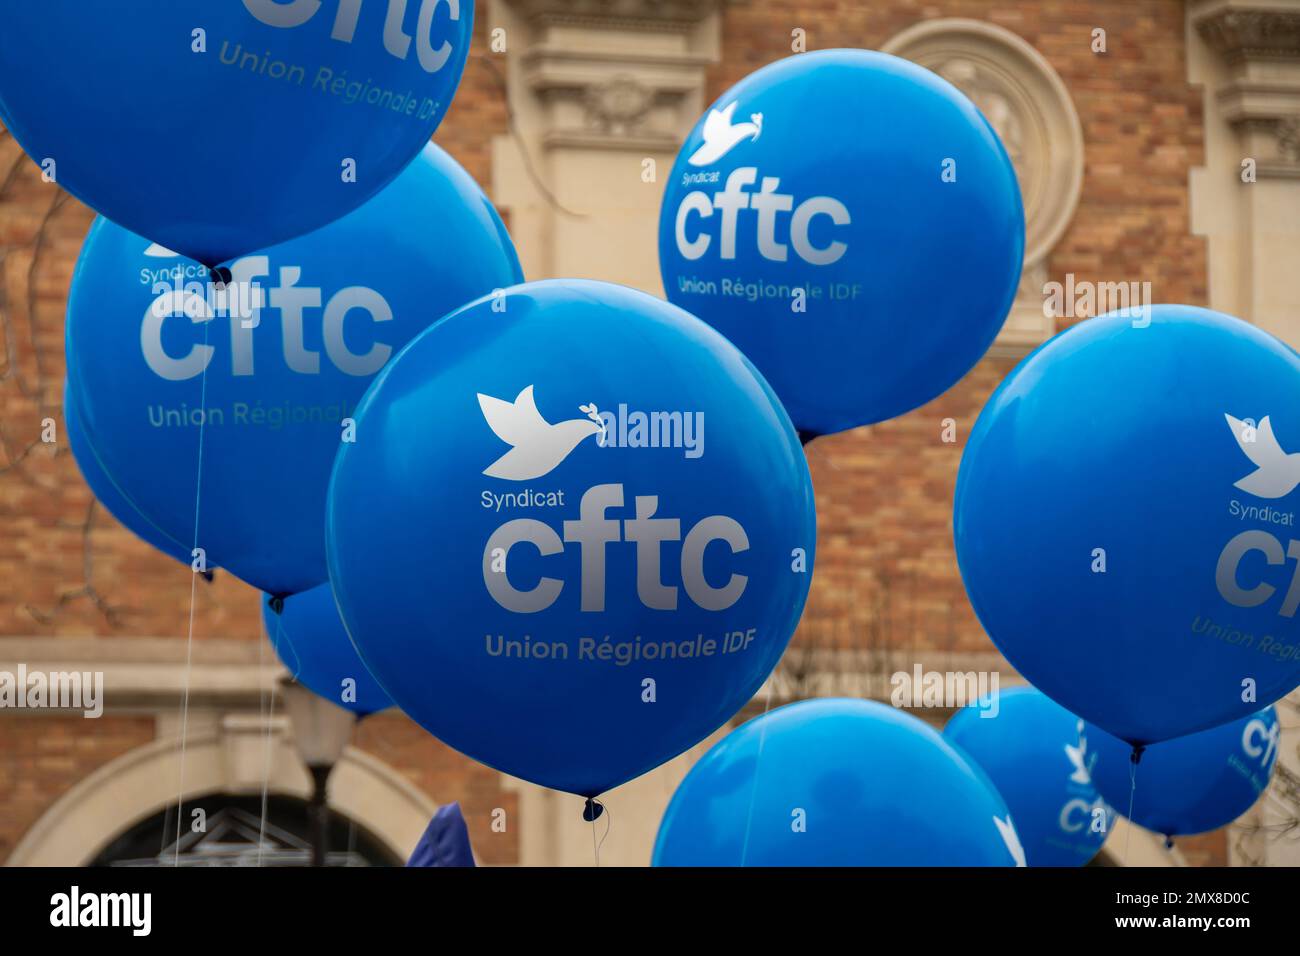 Mehrere blaue Ballons mit Logo und Akronym der französischen Gewerkschaft CFTC (Französischer Bund christlicher Arbeiter) während einer Demonstration Stockfoto